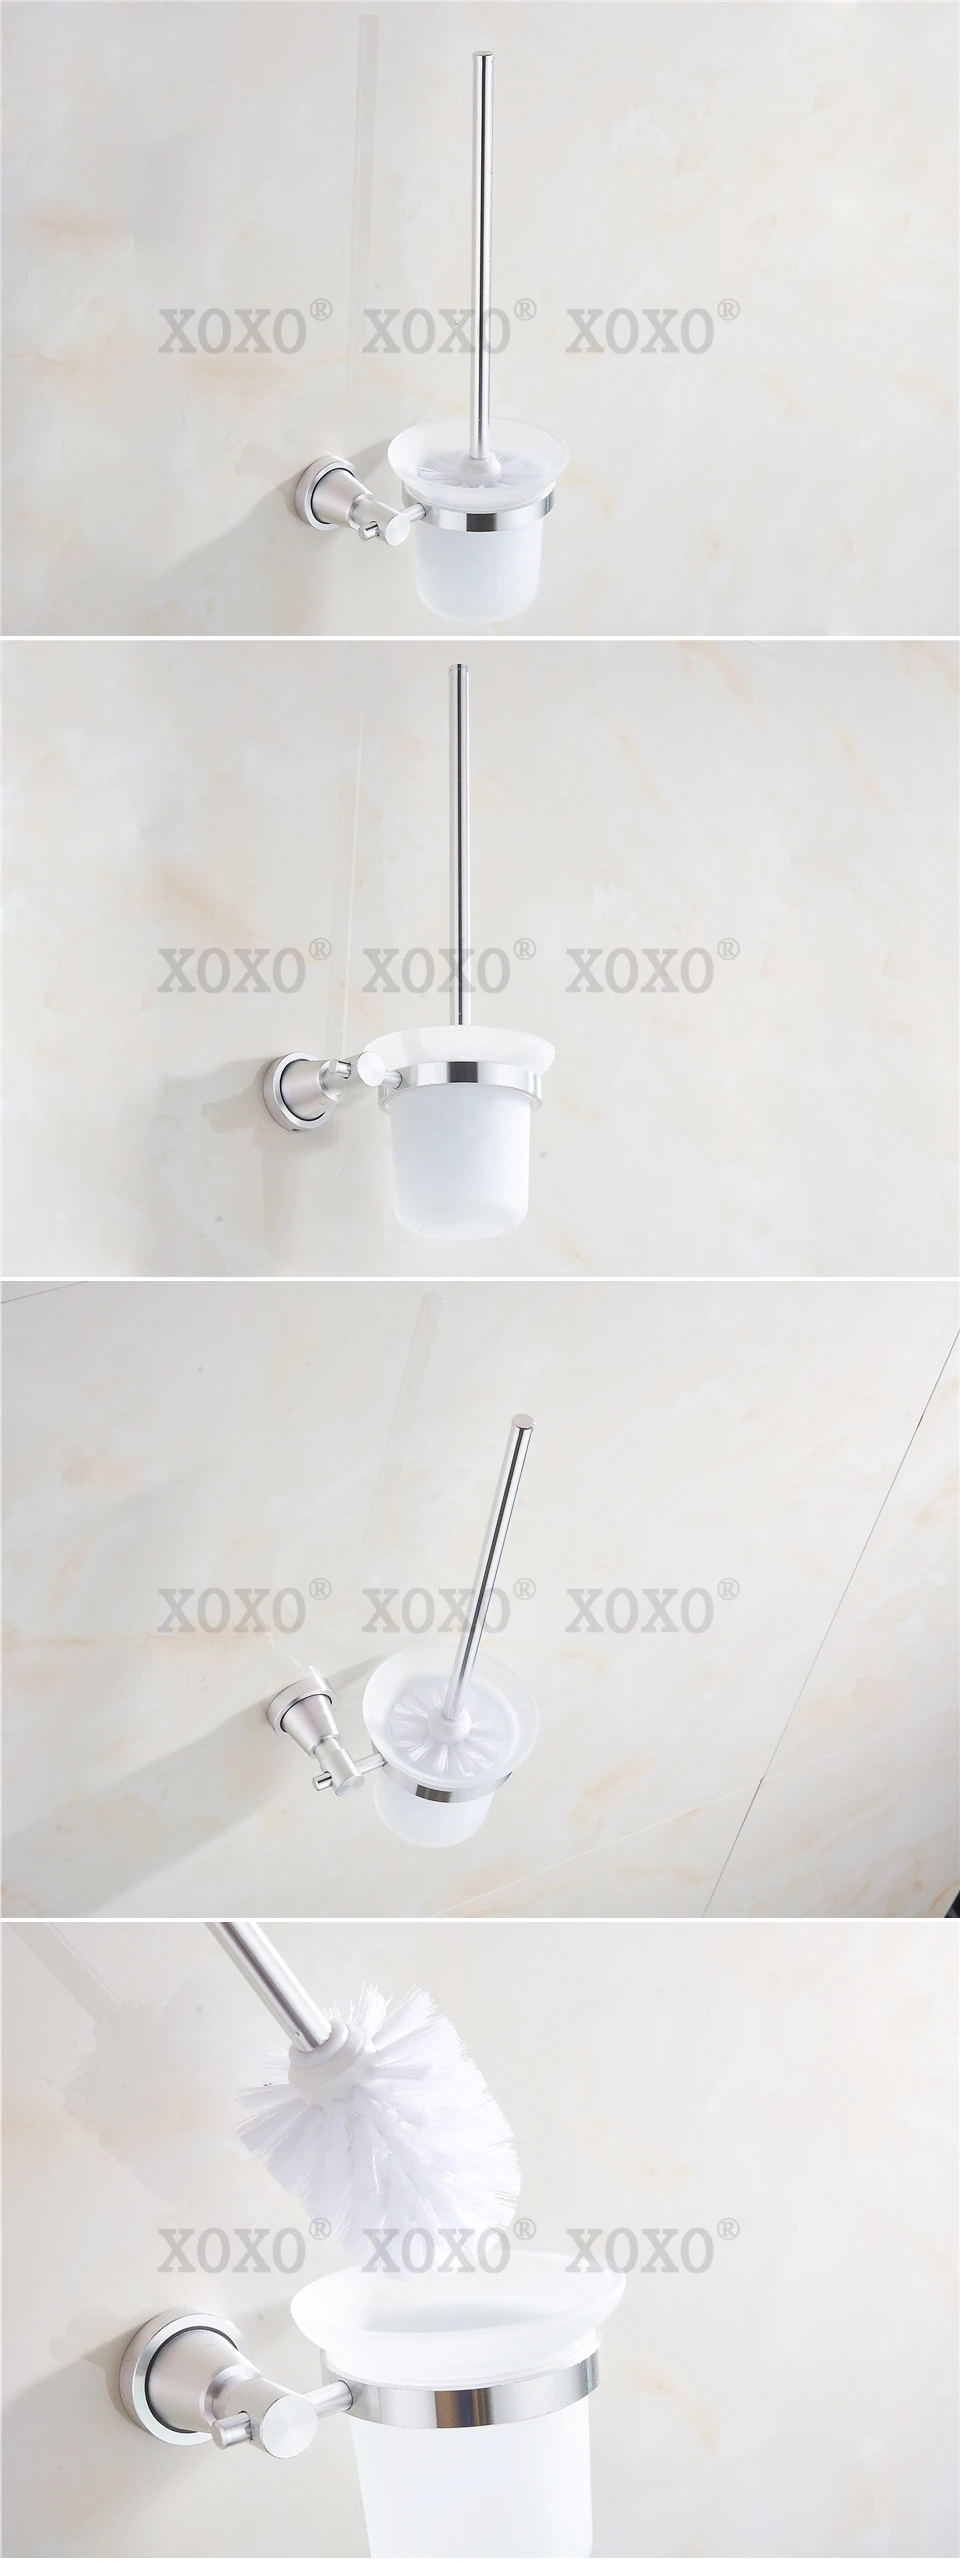 XOXONew прибытие продукта soild практичный настенный аксессуары для ванной комнаты щетка для ванной туалета держатель 3081